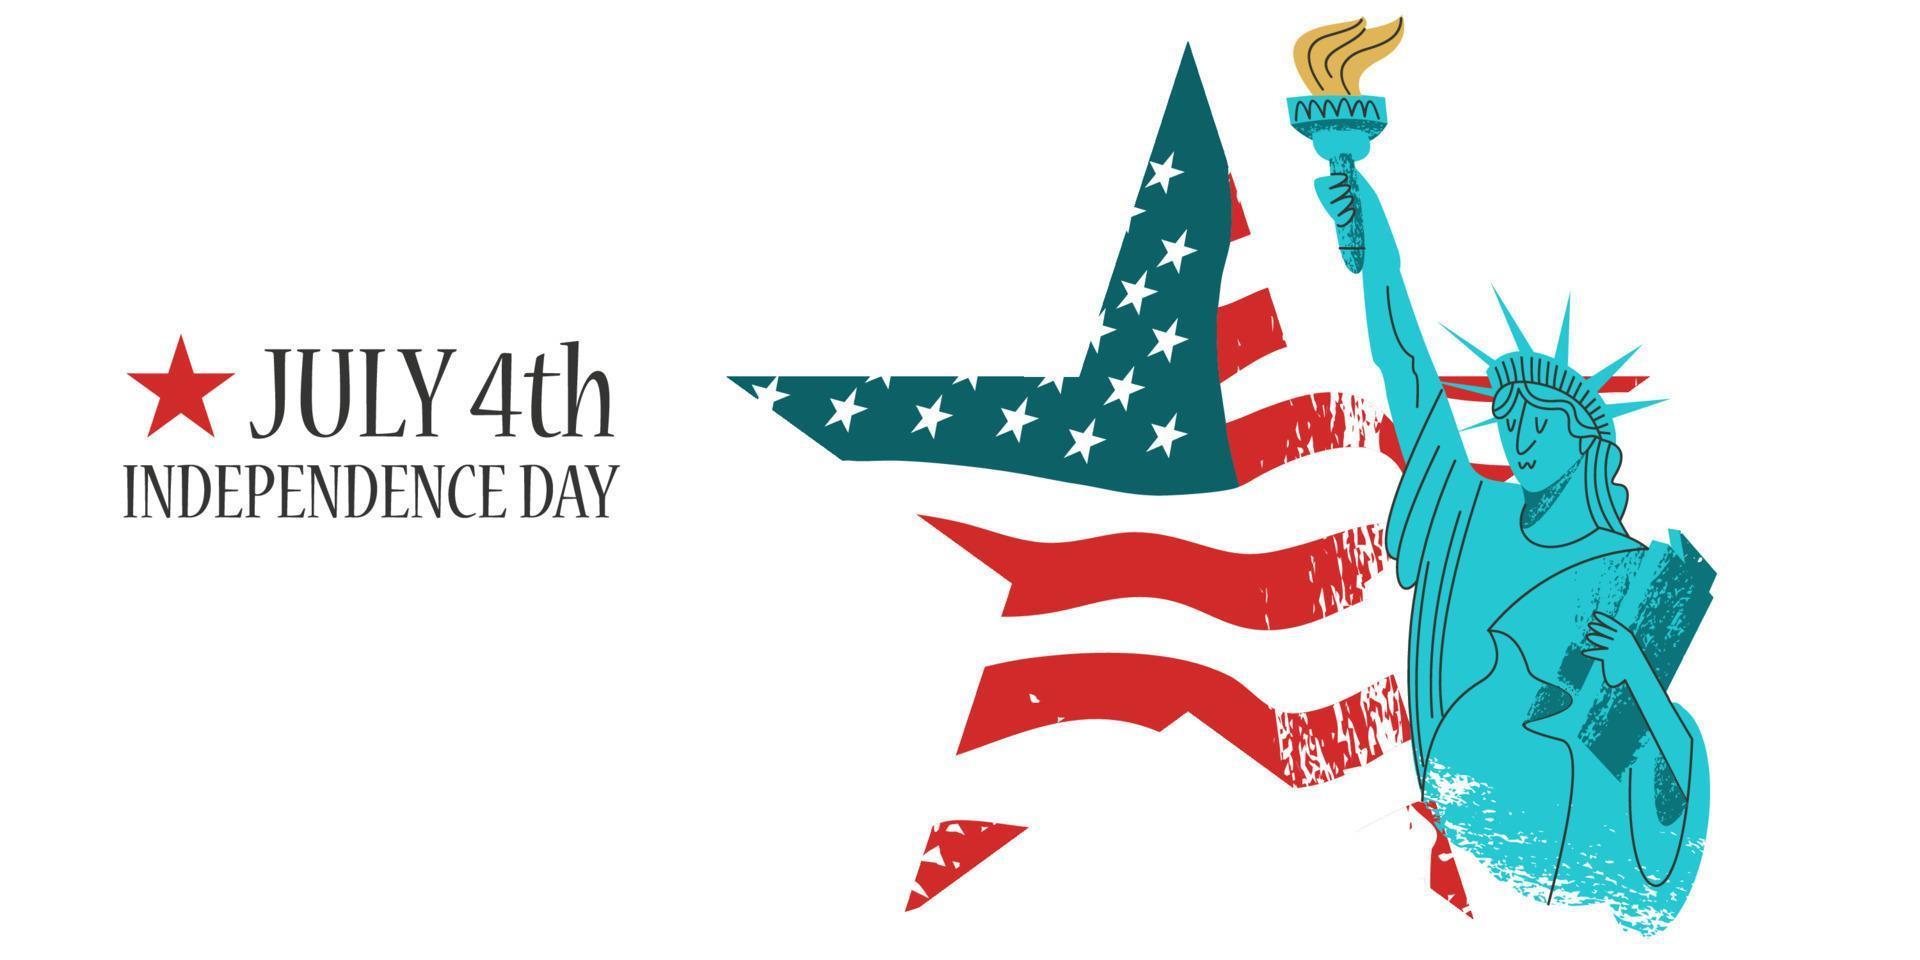 4 juli självständighetsdag. vektor affisch, gratulationskort. Frihetsgudinnan med en fackla i handen på bakgrunden av den amerikanska flaggan i form av en stjärna.